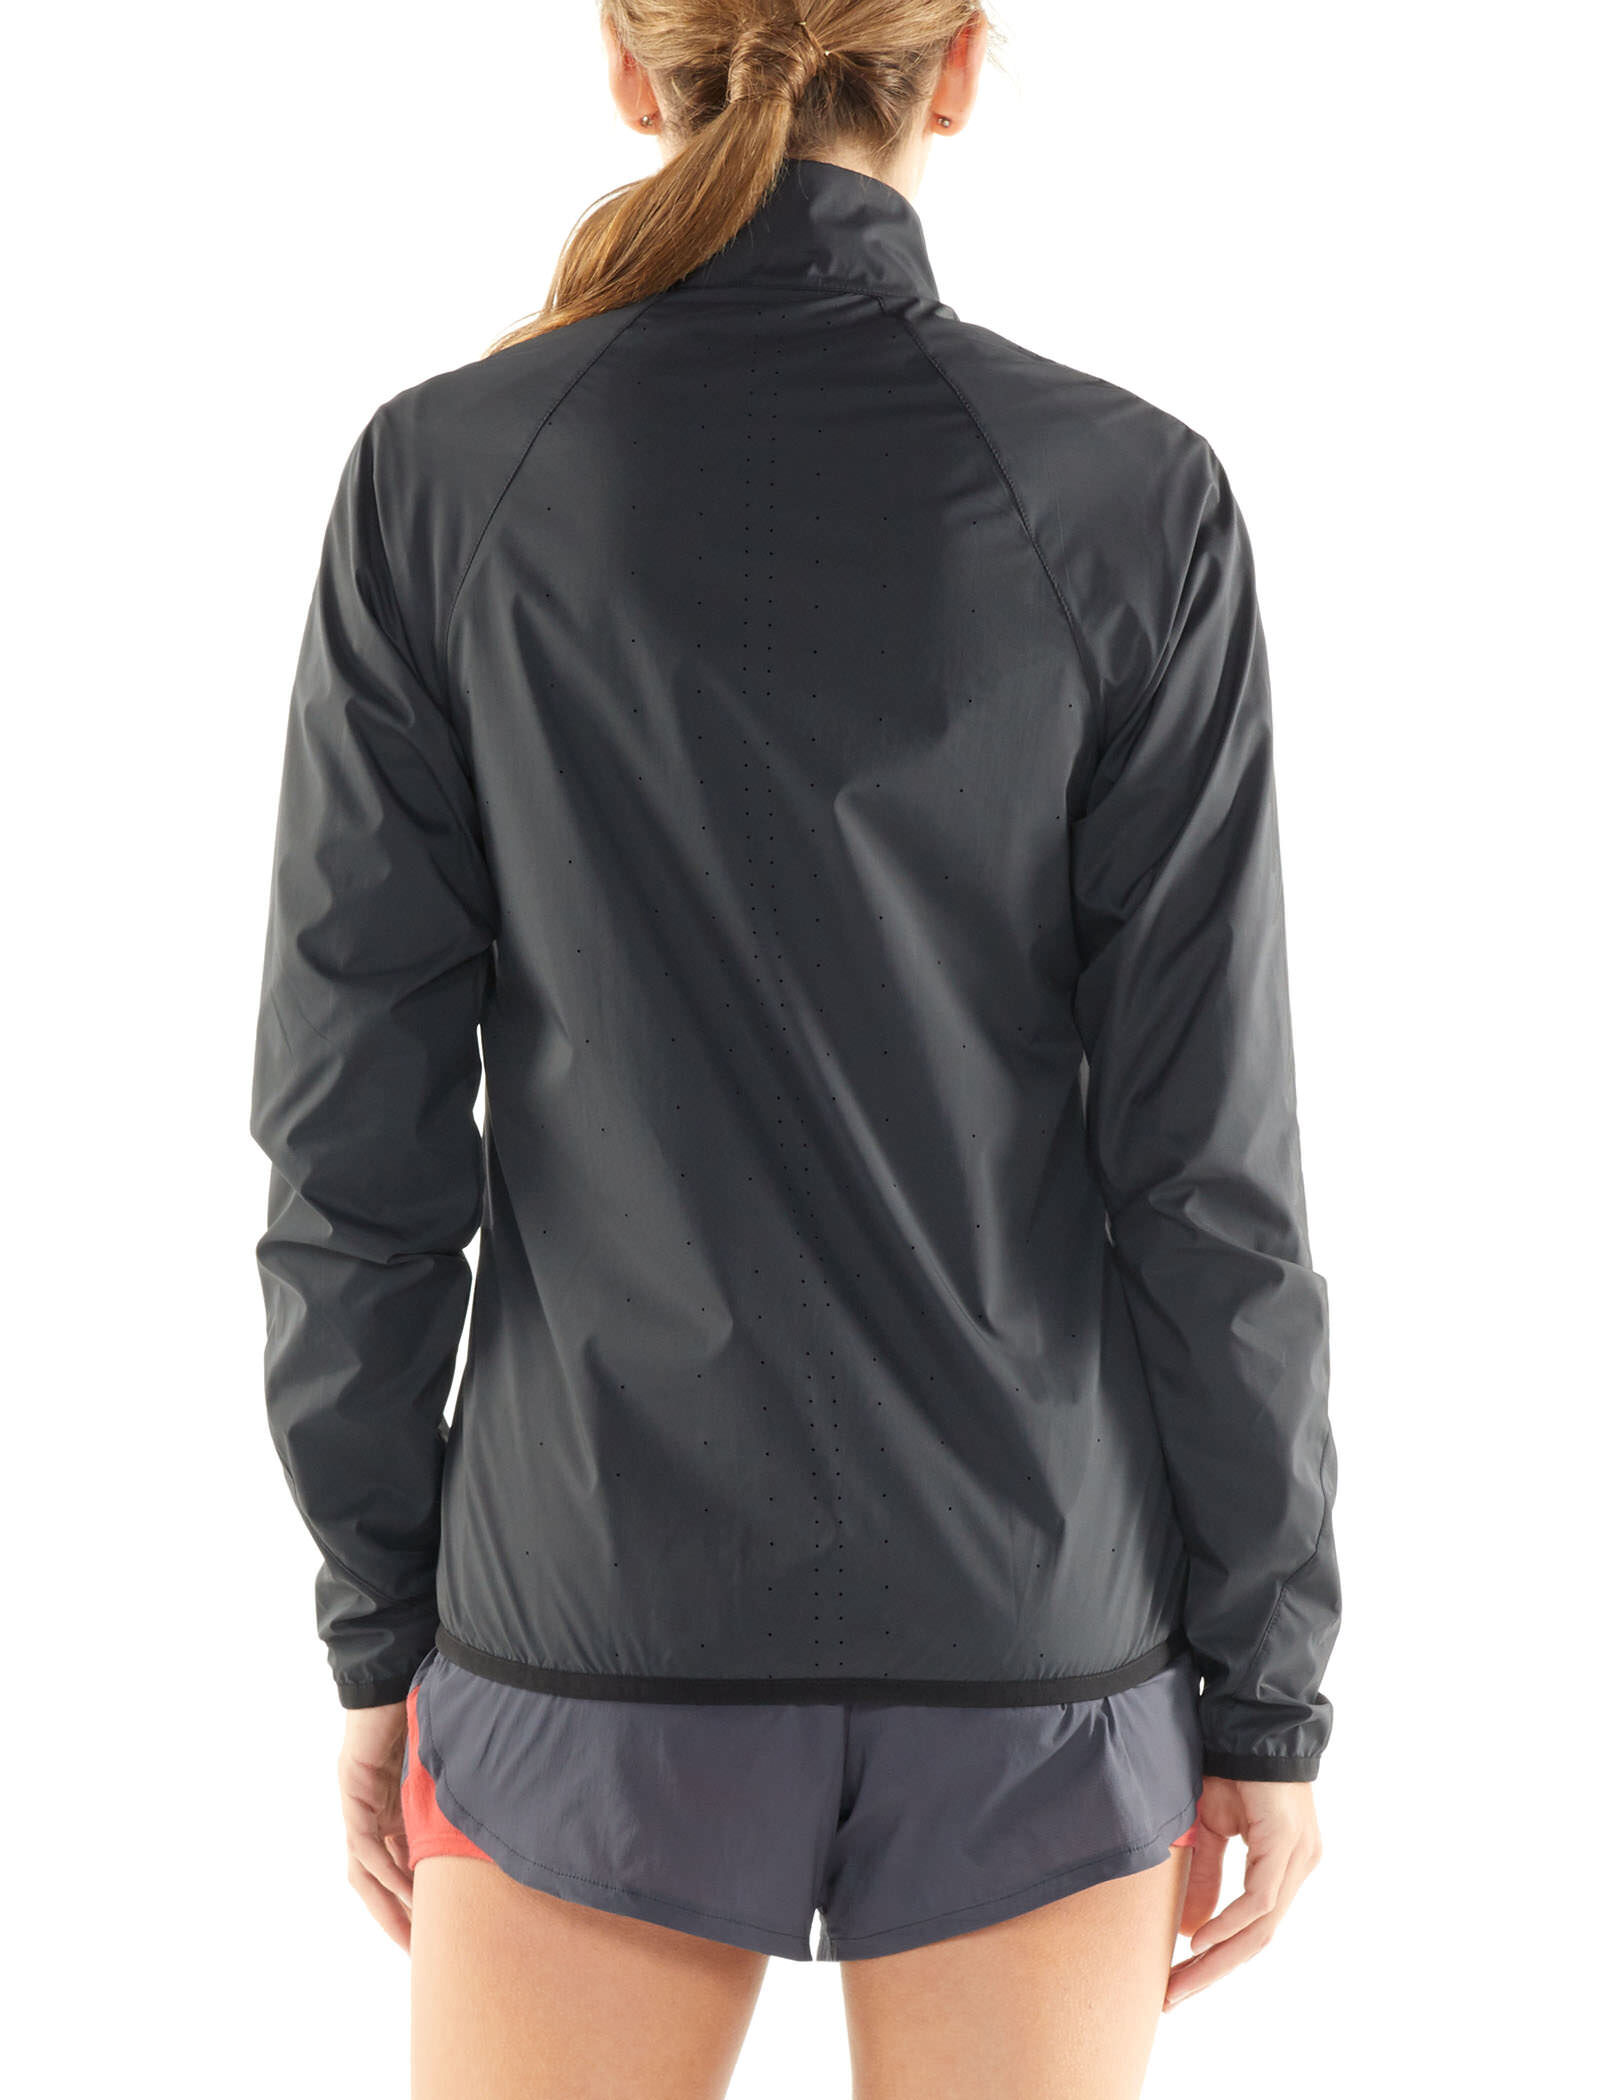 Icebreaker Merino Women's Rush Windbreaker Jacket for Trail Running & Hiking Lightweight Merino Wool Liner 